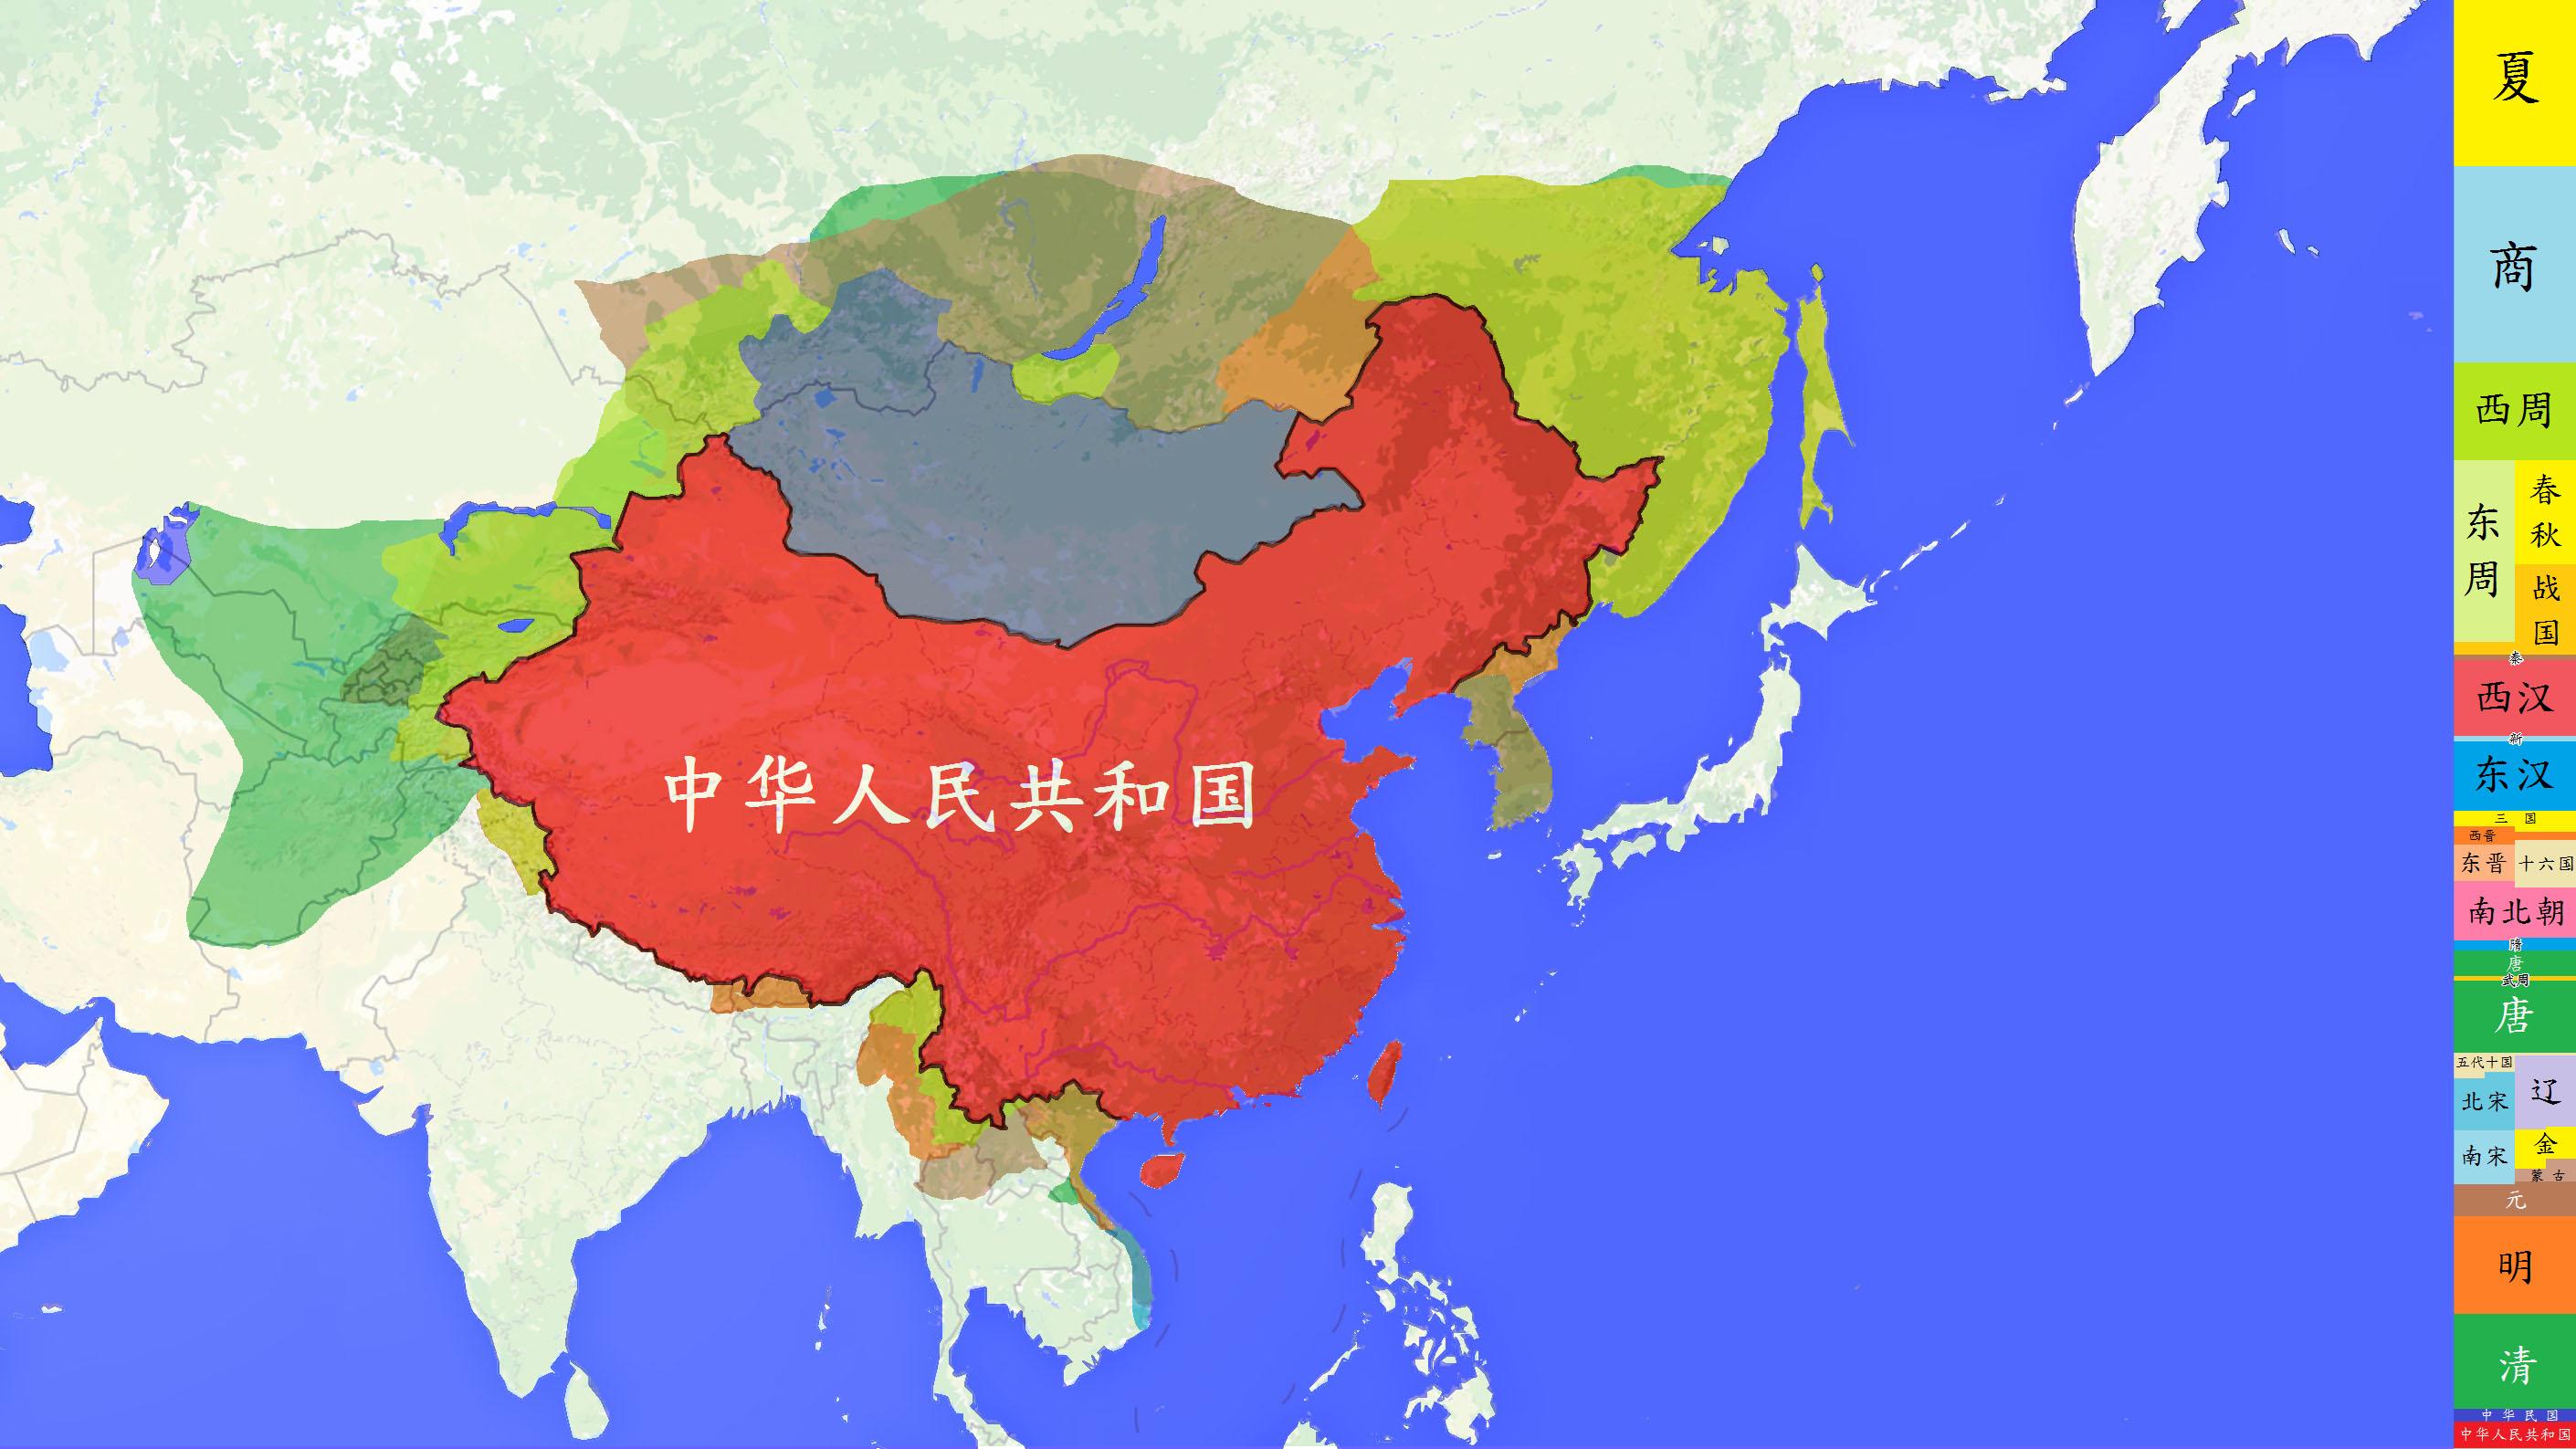 中国又添新领土图片